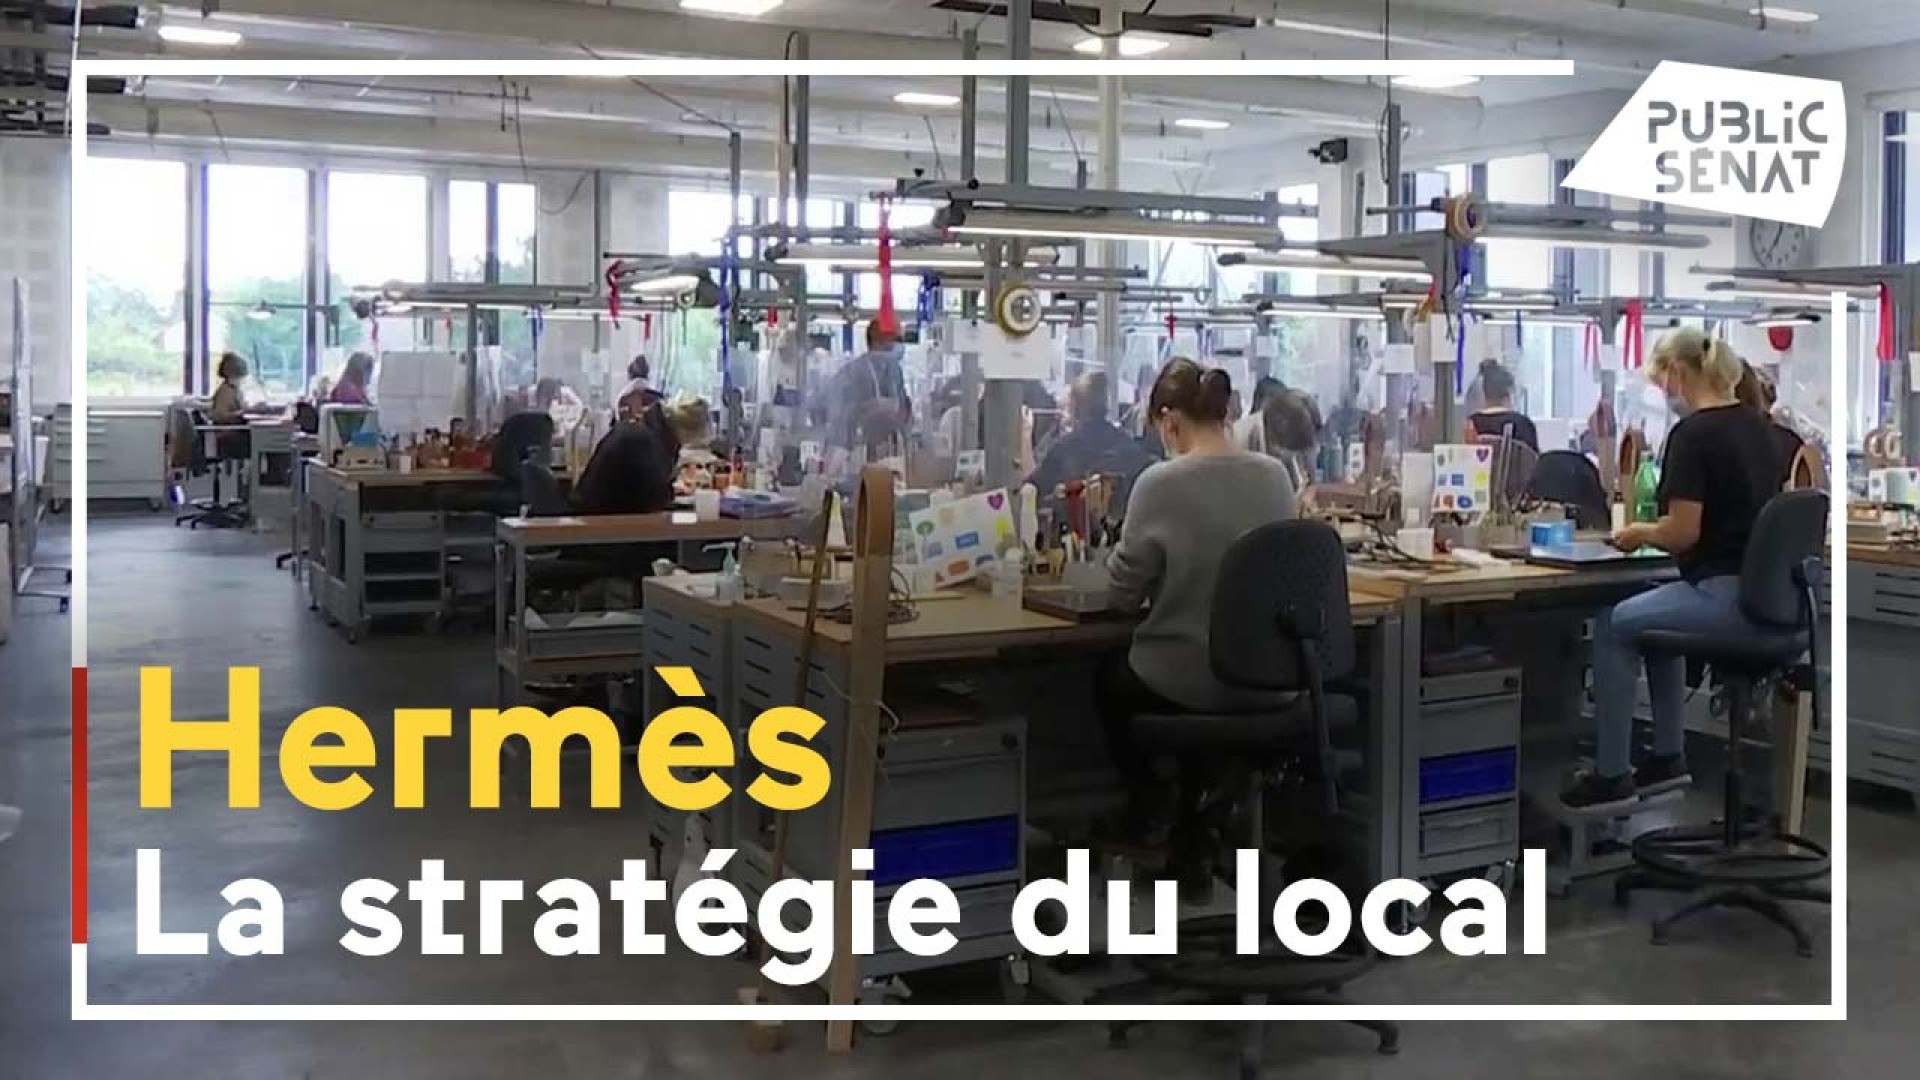 La stratégie locale de la maison Hermès - Vidéo Dailymotion